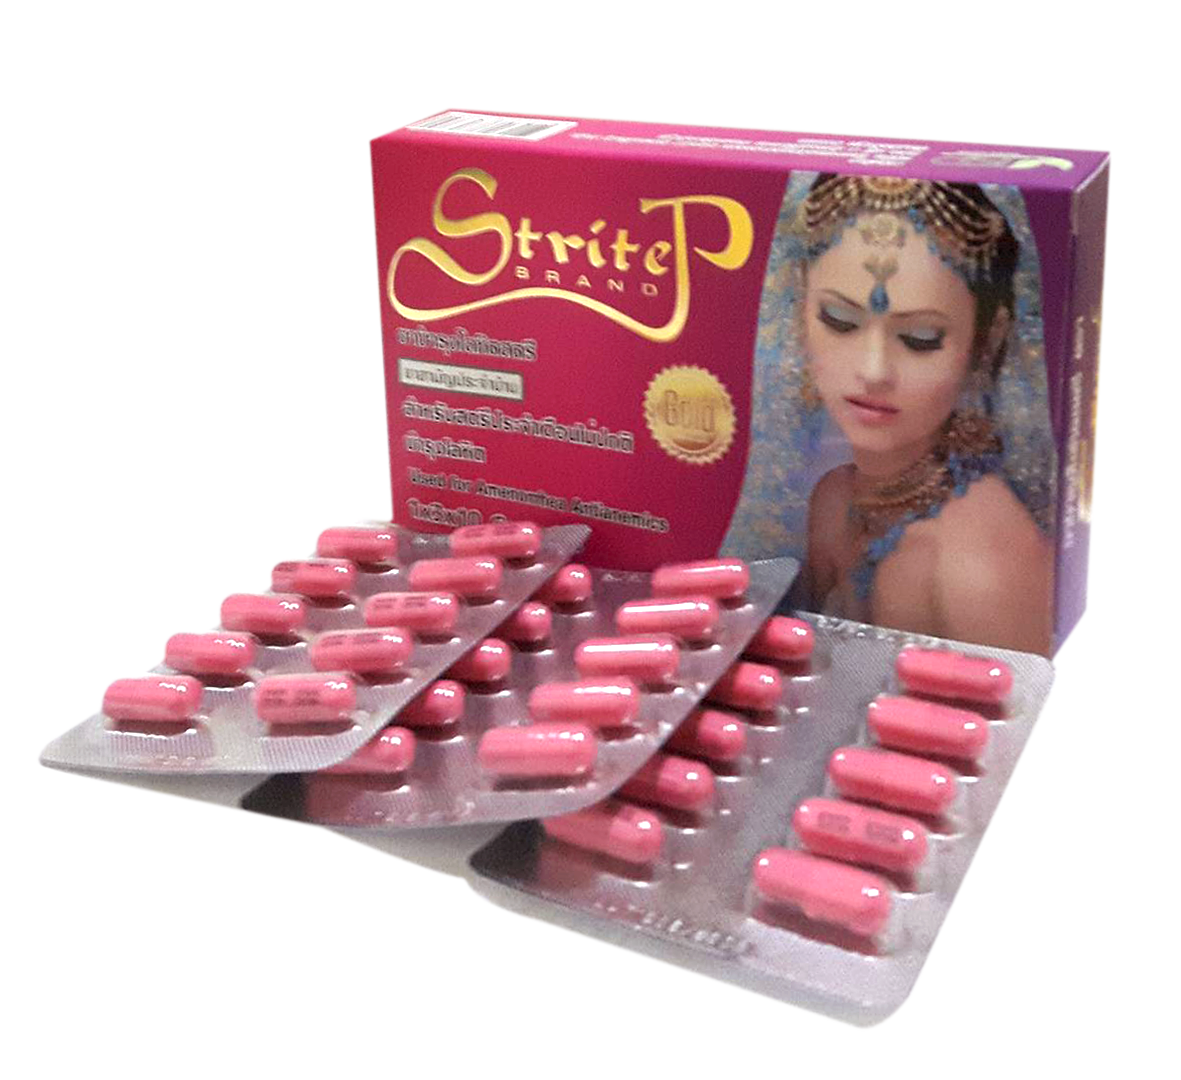 สตรีเทพ (Stritep) ยาบำรุงโลหิตสำหรับสตรี 1 กล่อง